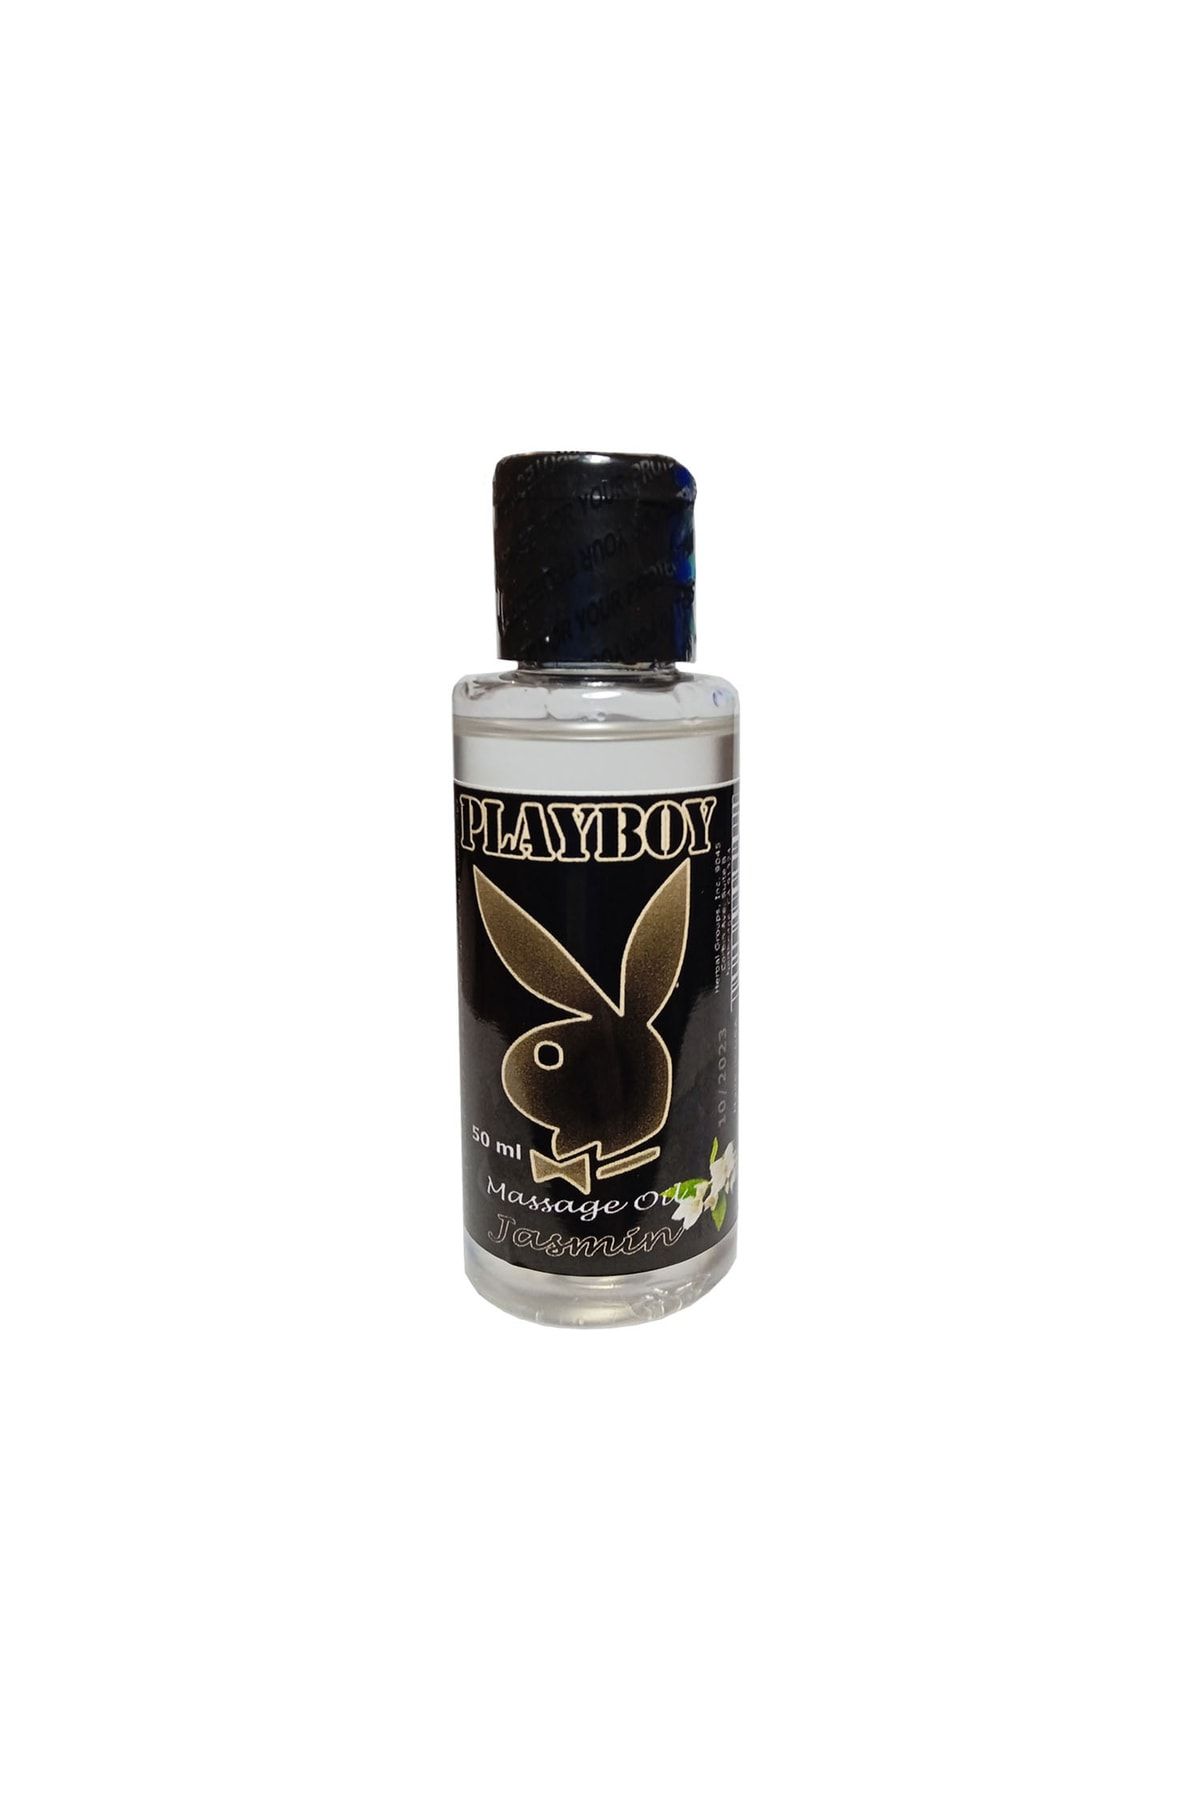 Playboy Masaj Yağı Yasemin Aromalı Aromaterapi 50ml / Massage Oil Jasmine Flavor Aromatherapy 50ml